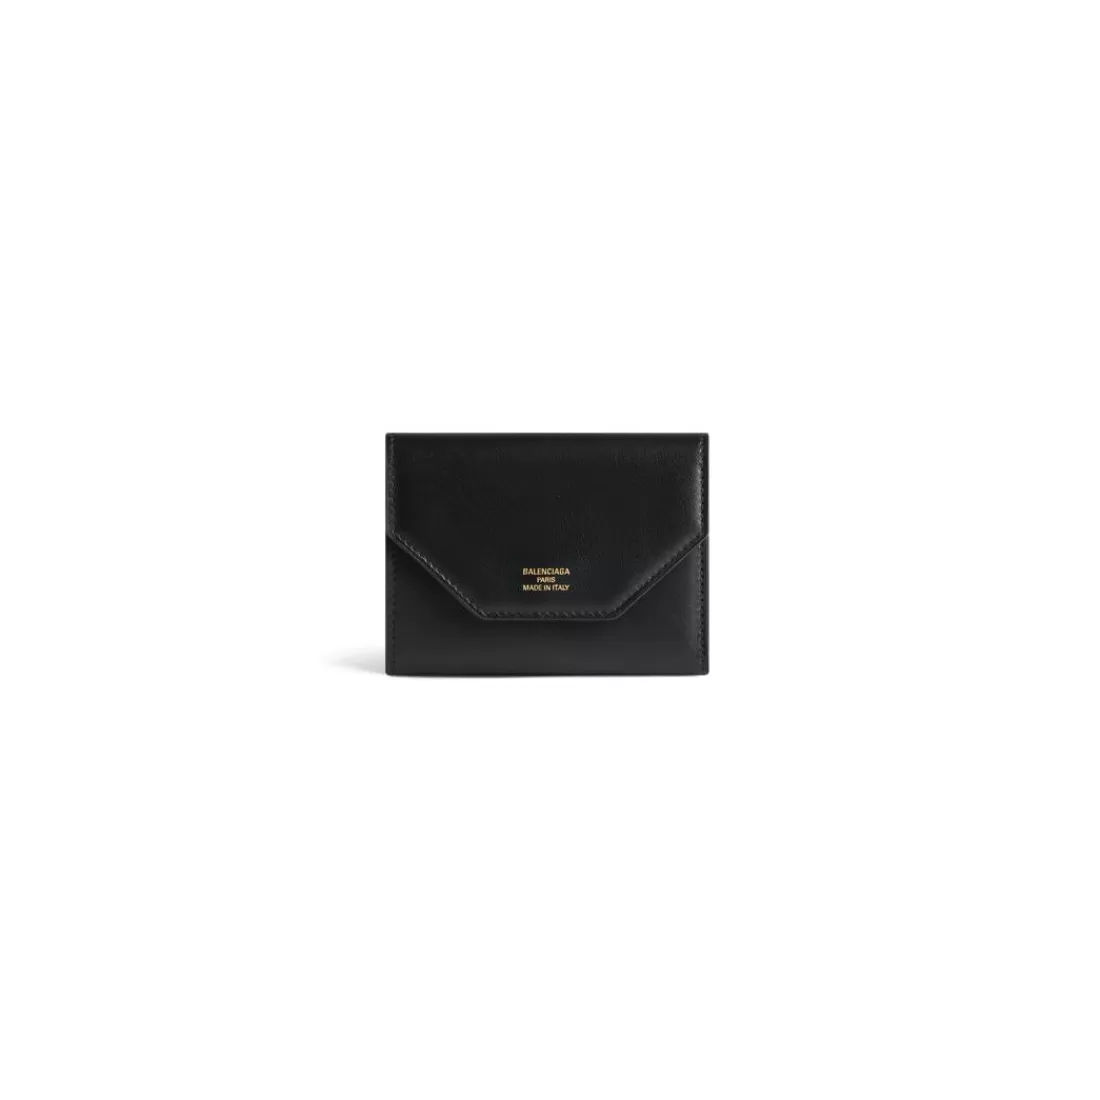 ENVELOPE | PORTA CARTE>Balenciaga Portafoglio Compatto Envelope Con Portacarte  da Donna in Nero